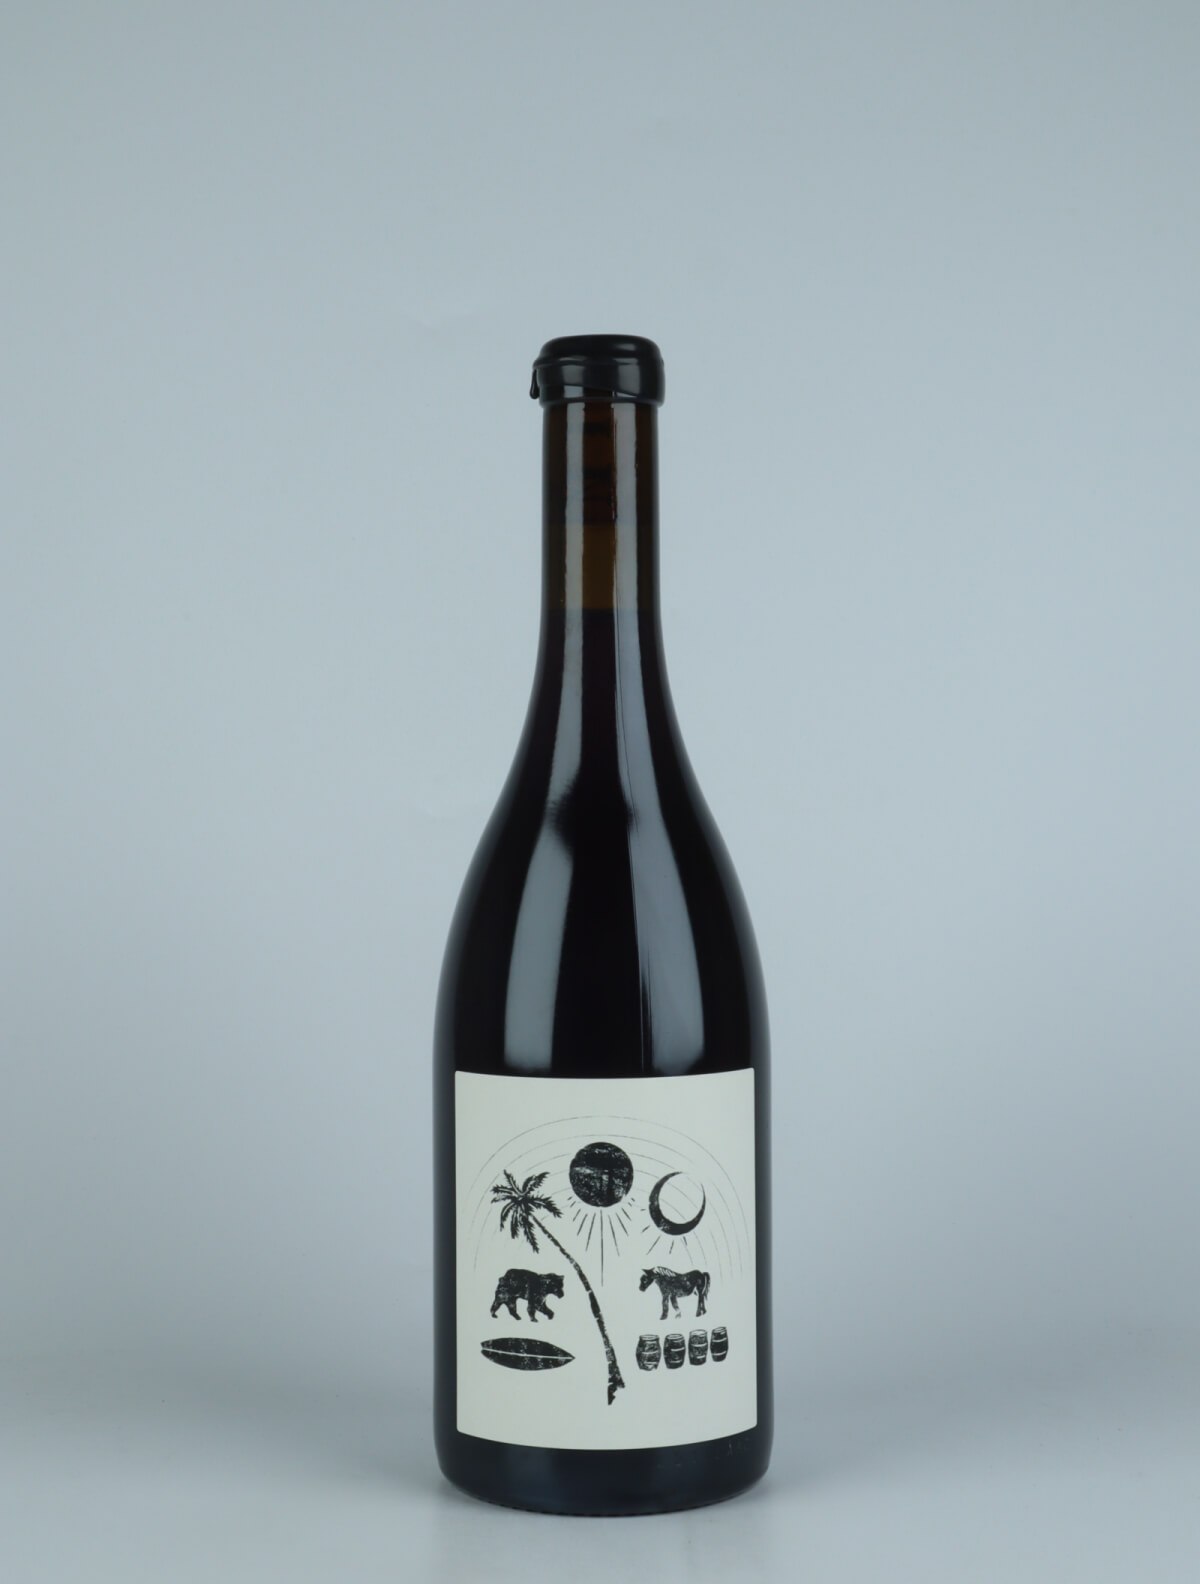 En flaske 2021 Isaac Rødvin fra Vin Noé, Bourgogne i Frankrig